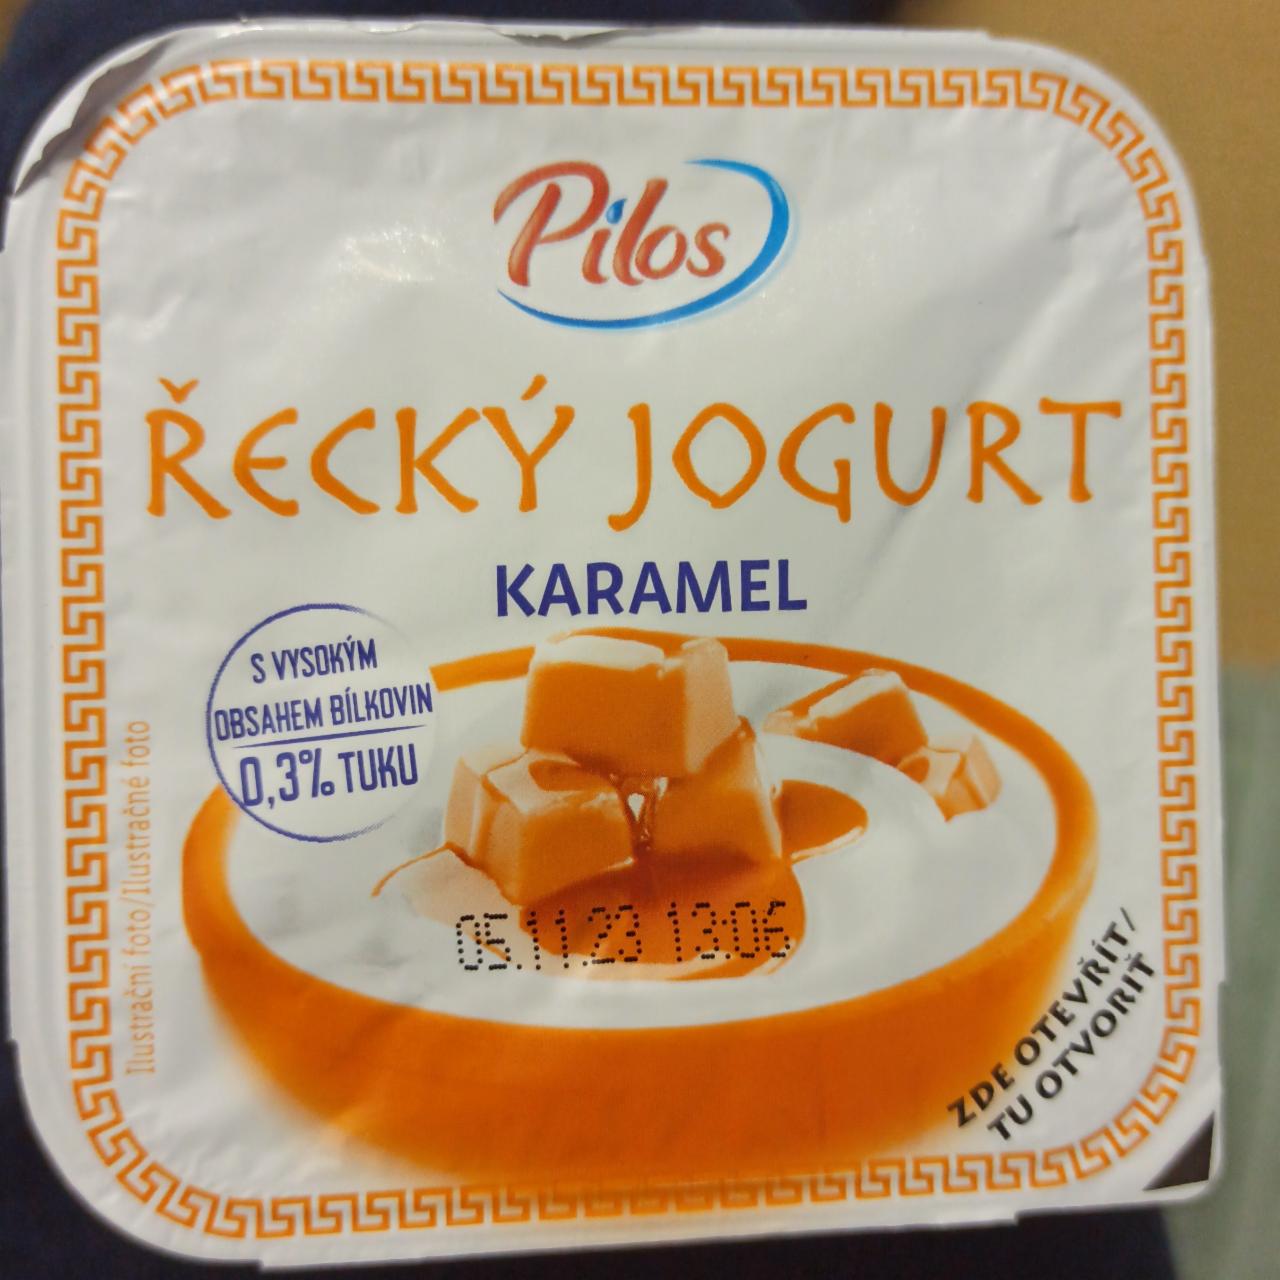 Фото - Řecký jogurt karamel 0,3% Pilos